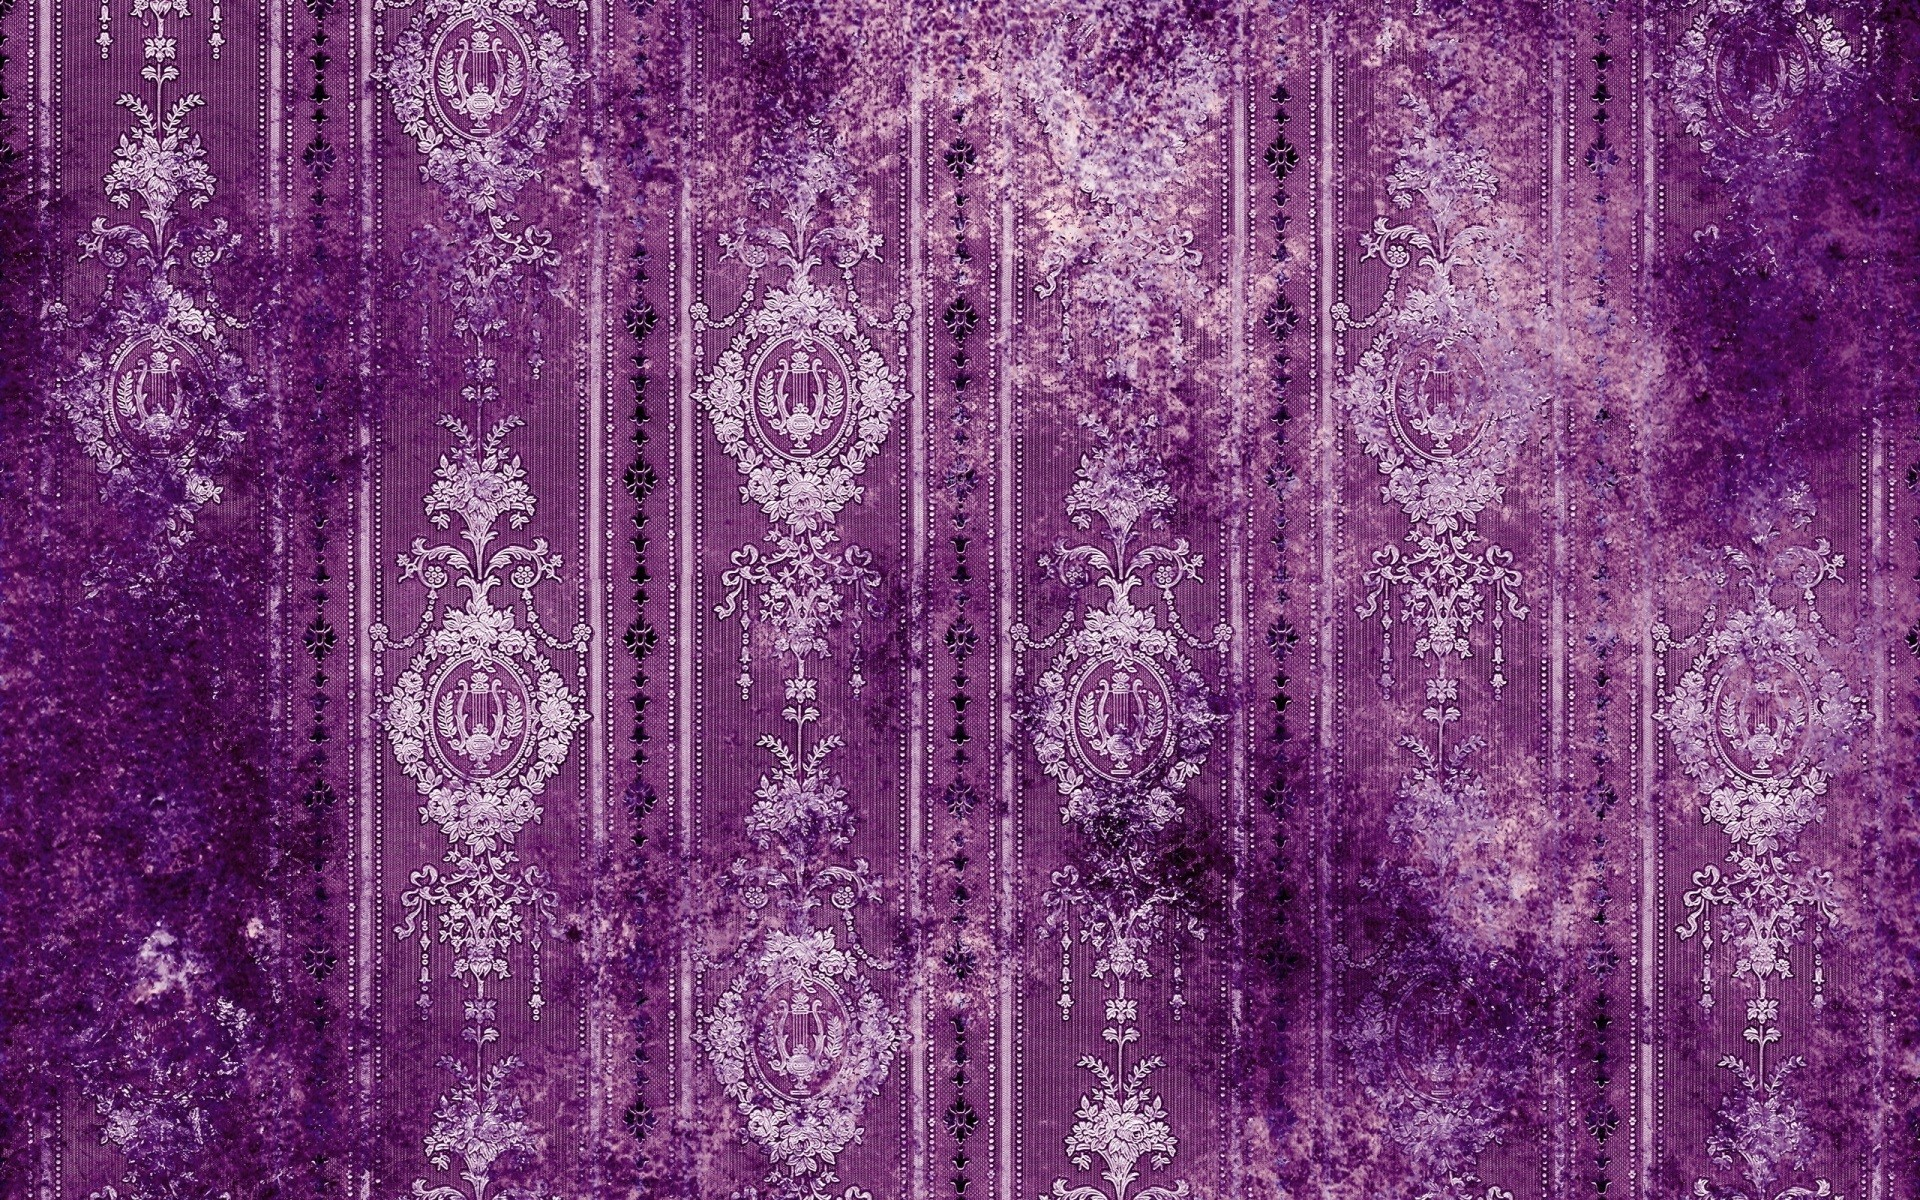 1920x1200 30 HD Purple Wallpapers